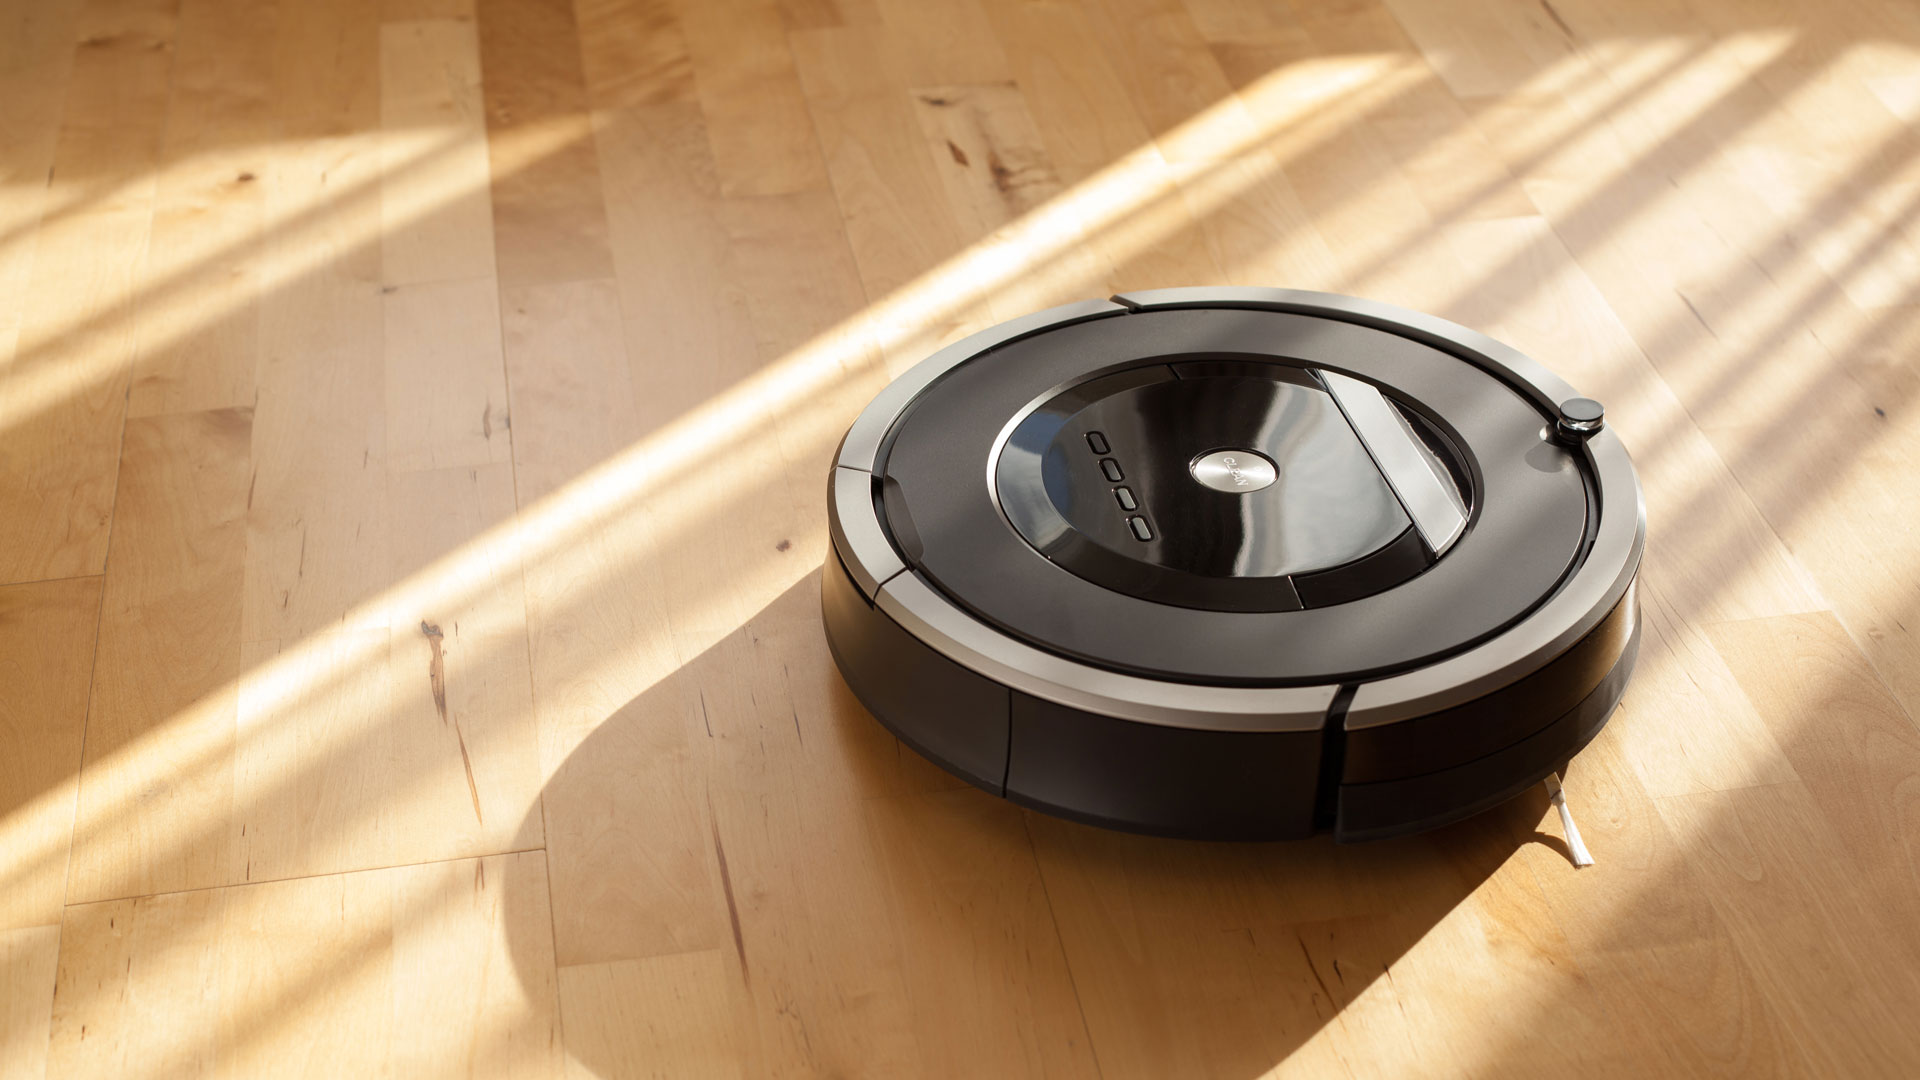 Best Robot Vacuums 2022 Top Ten Reviews, Best Robot Vacuum Cleaner For Hardwood Floors 2020